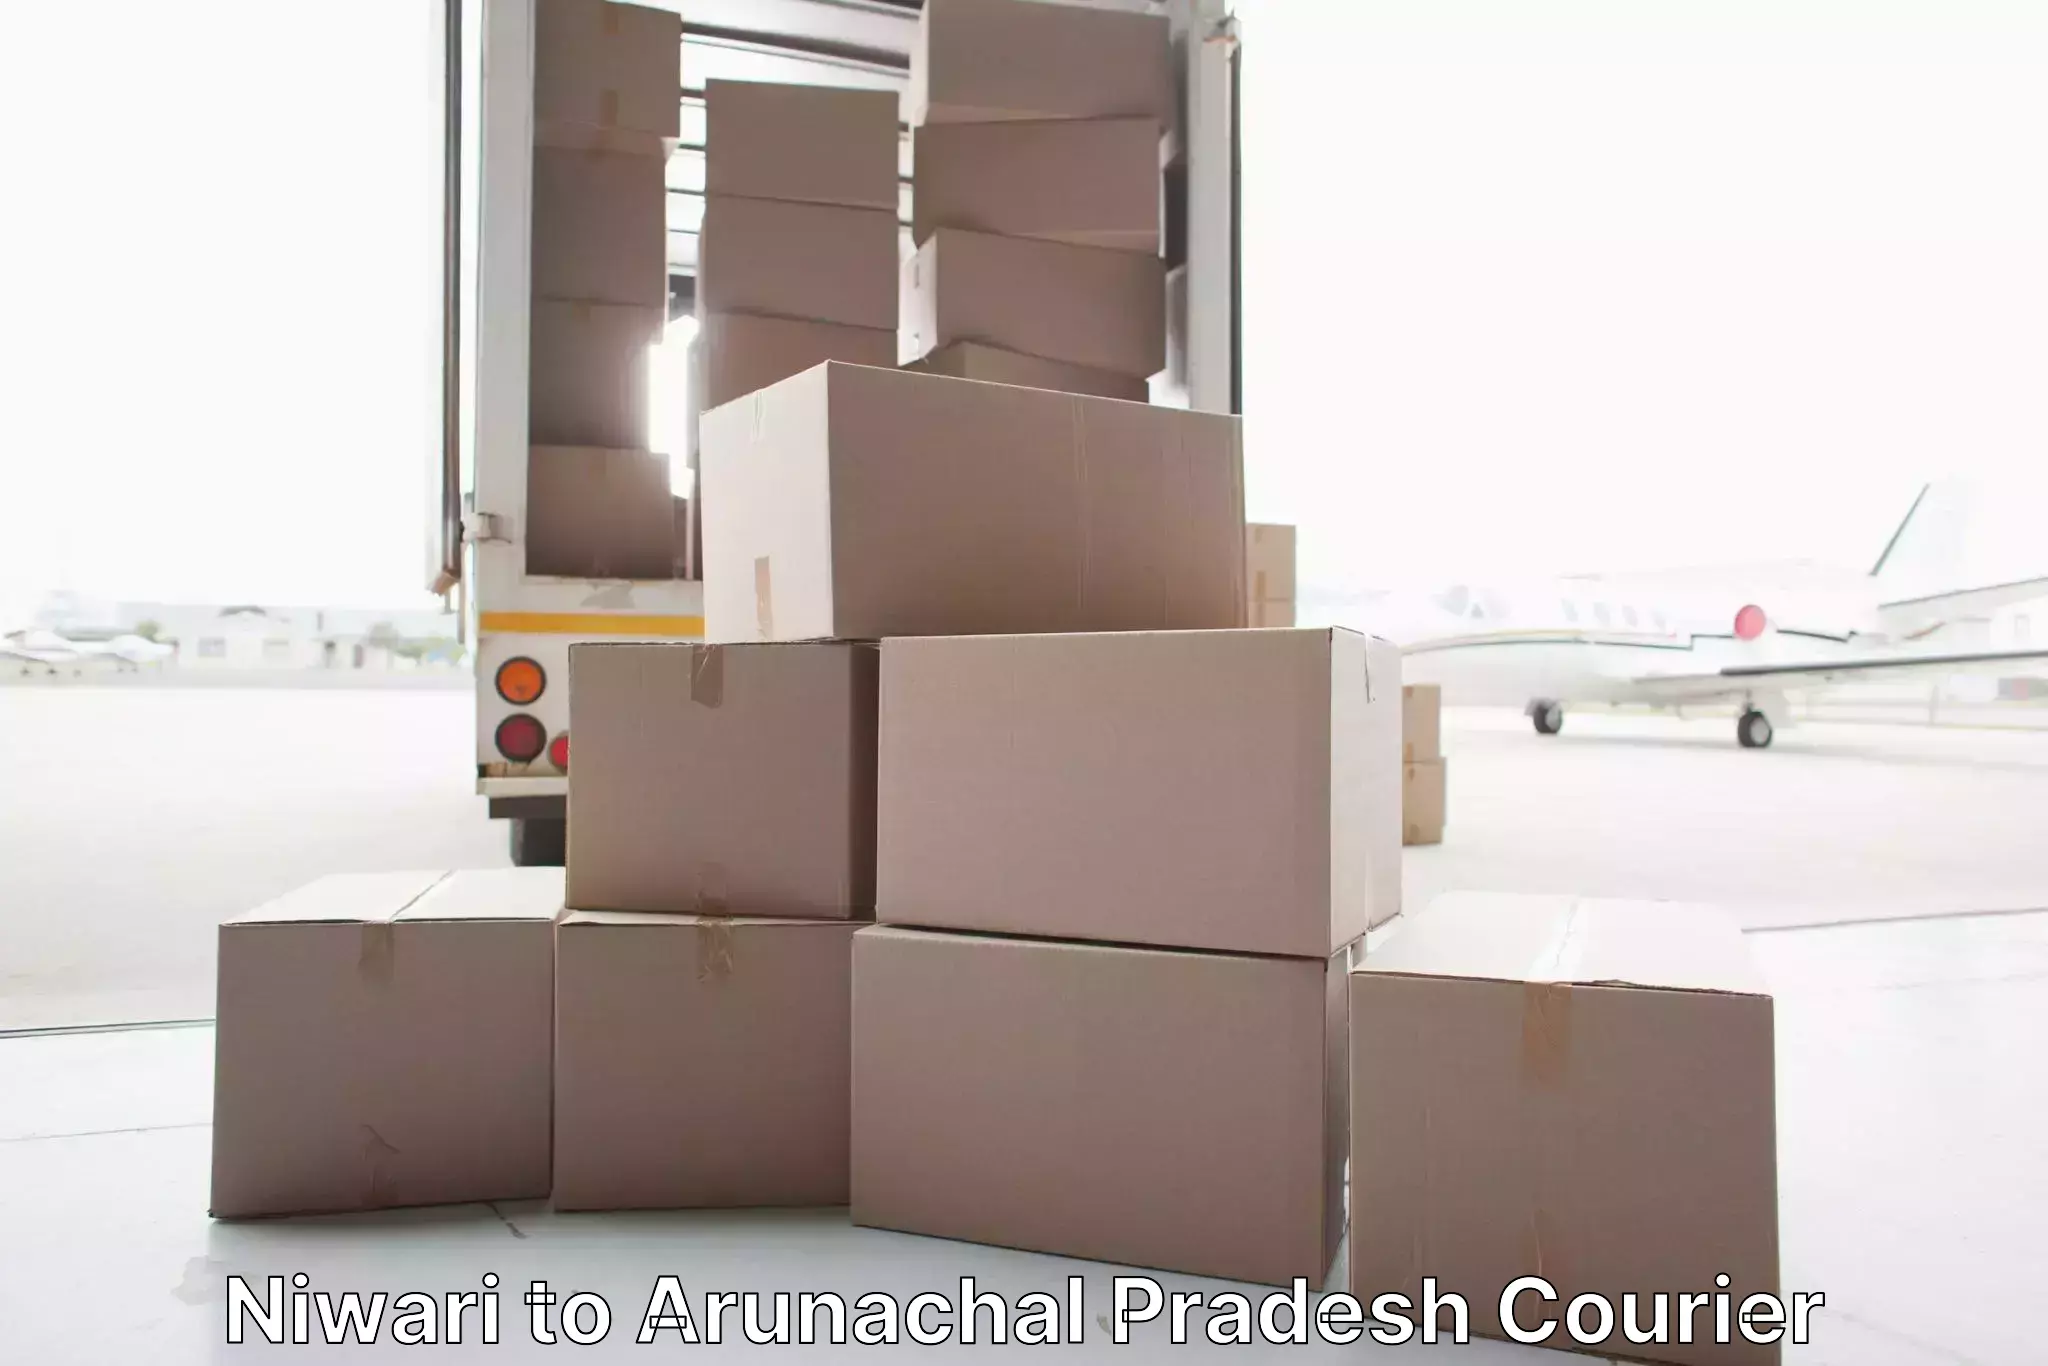 Full-service furniture transport Niwari to Lohit